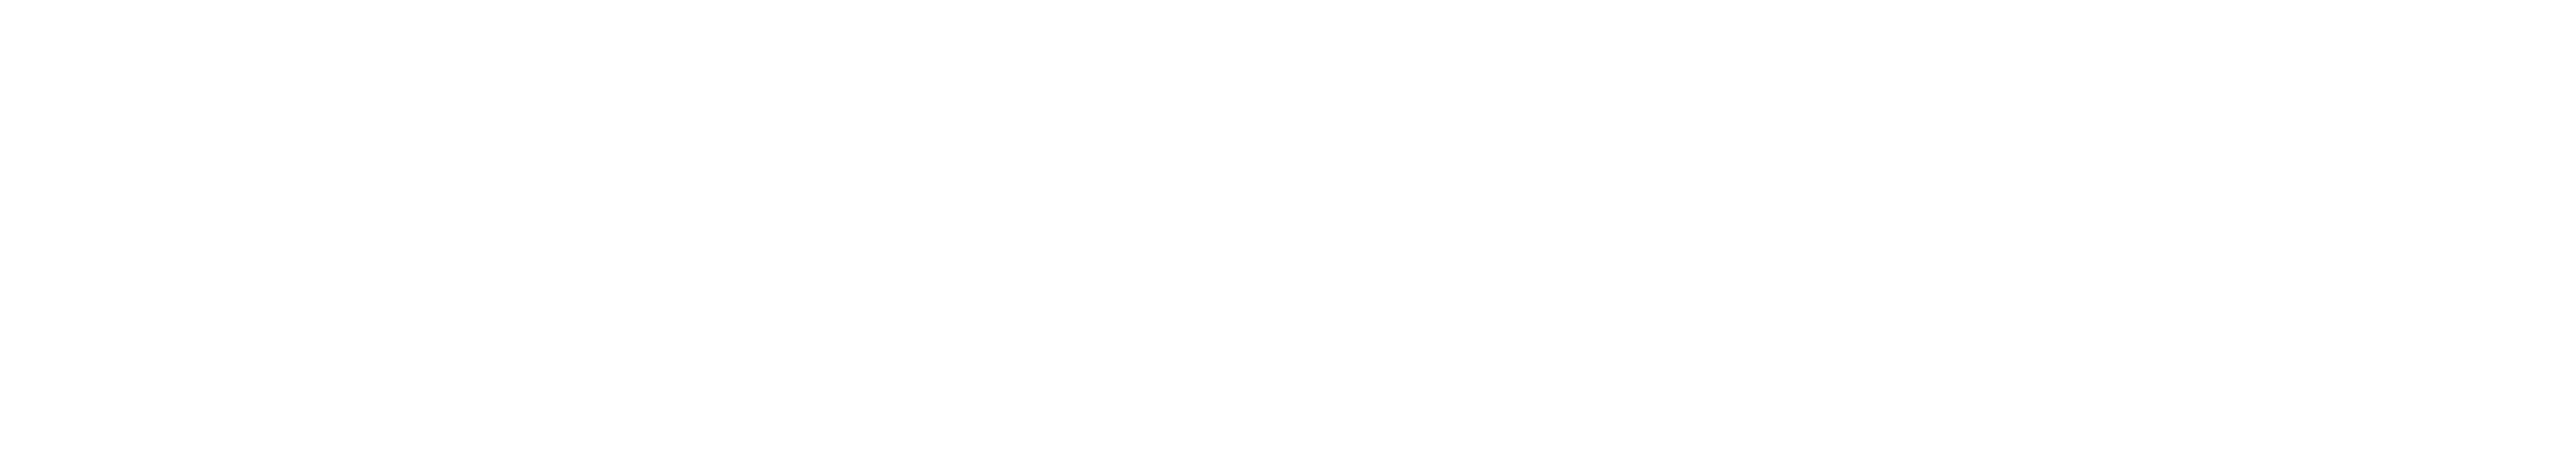 Perception Neuron Studio White Logo